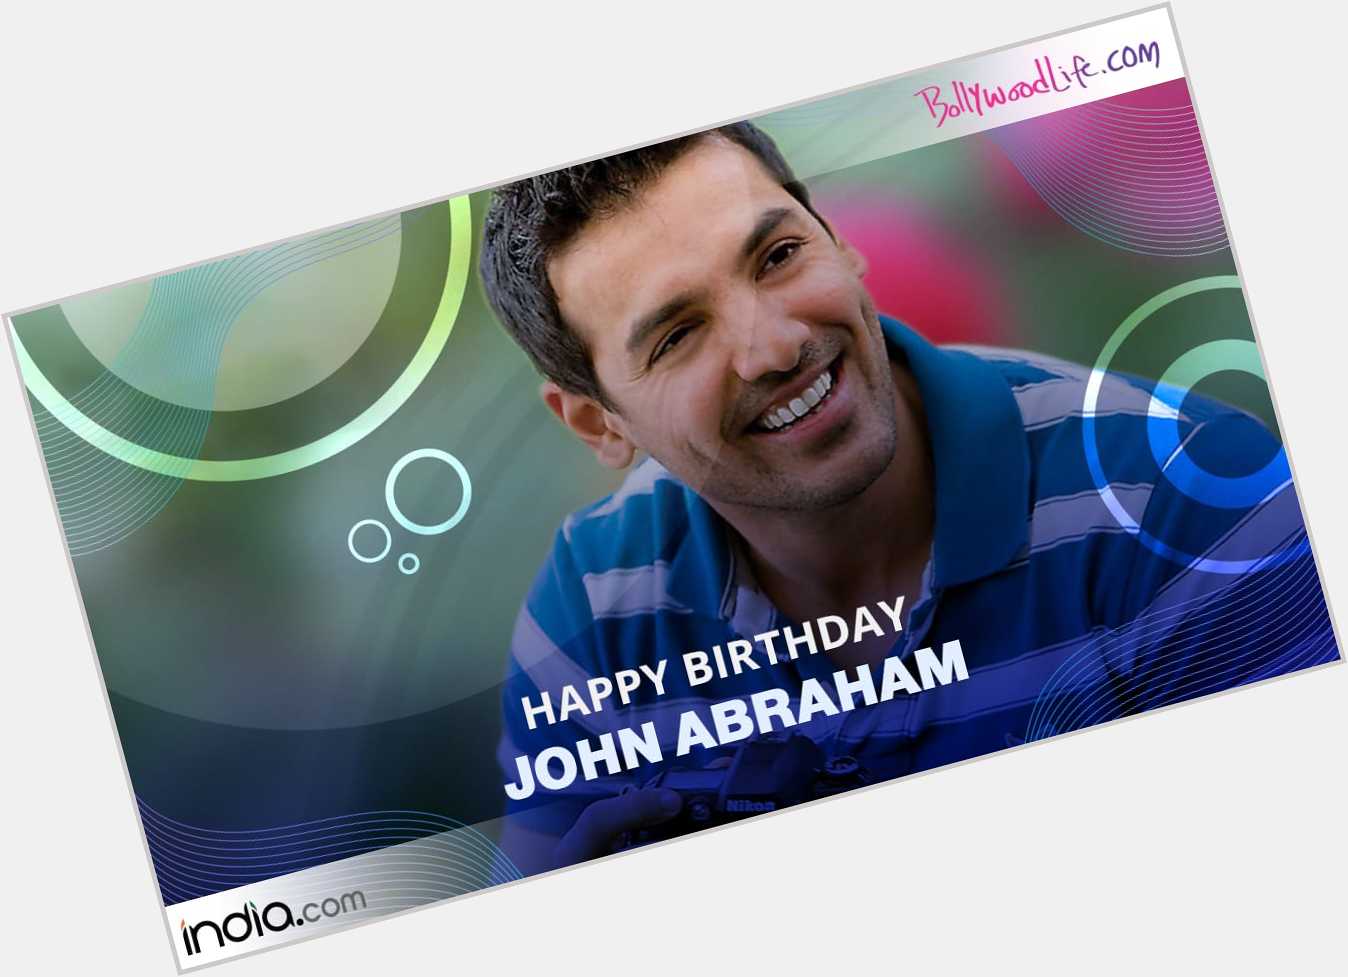 Happy Birthday John Abraham
.
.      